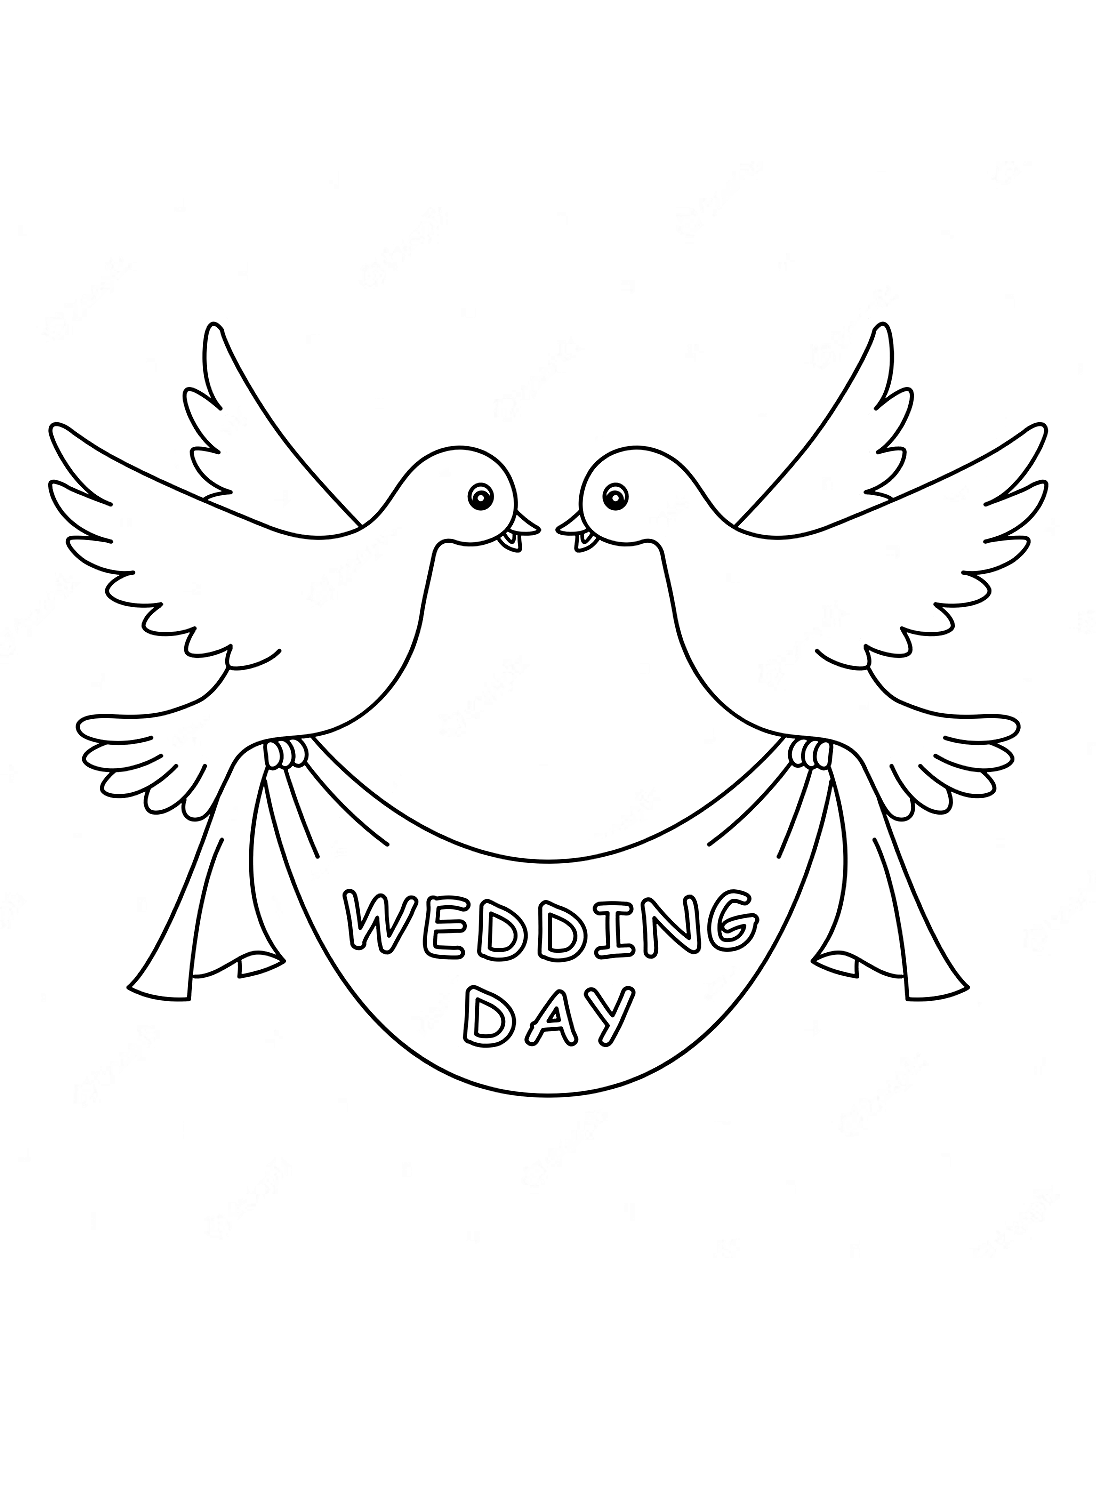 Ein Hochzeitstag und Tauben von Doves